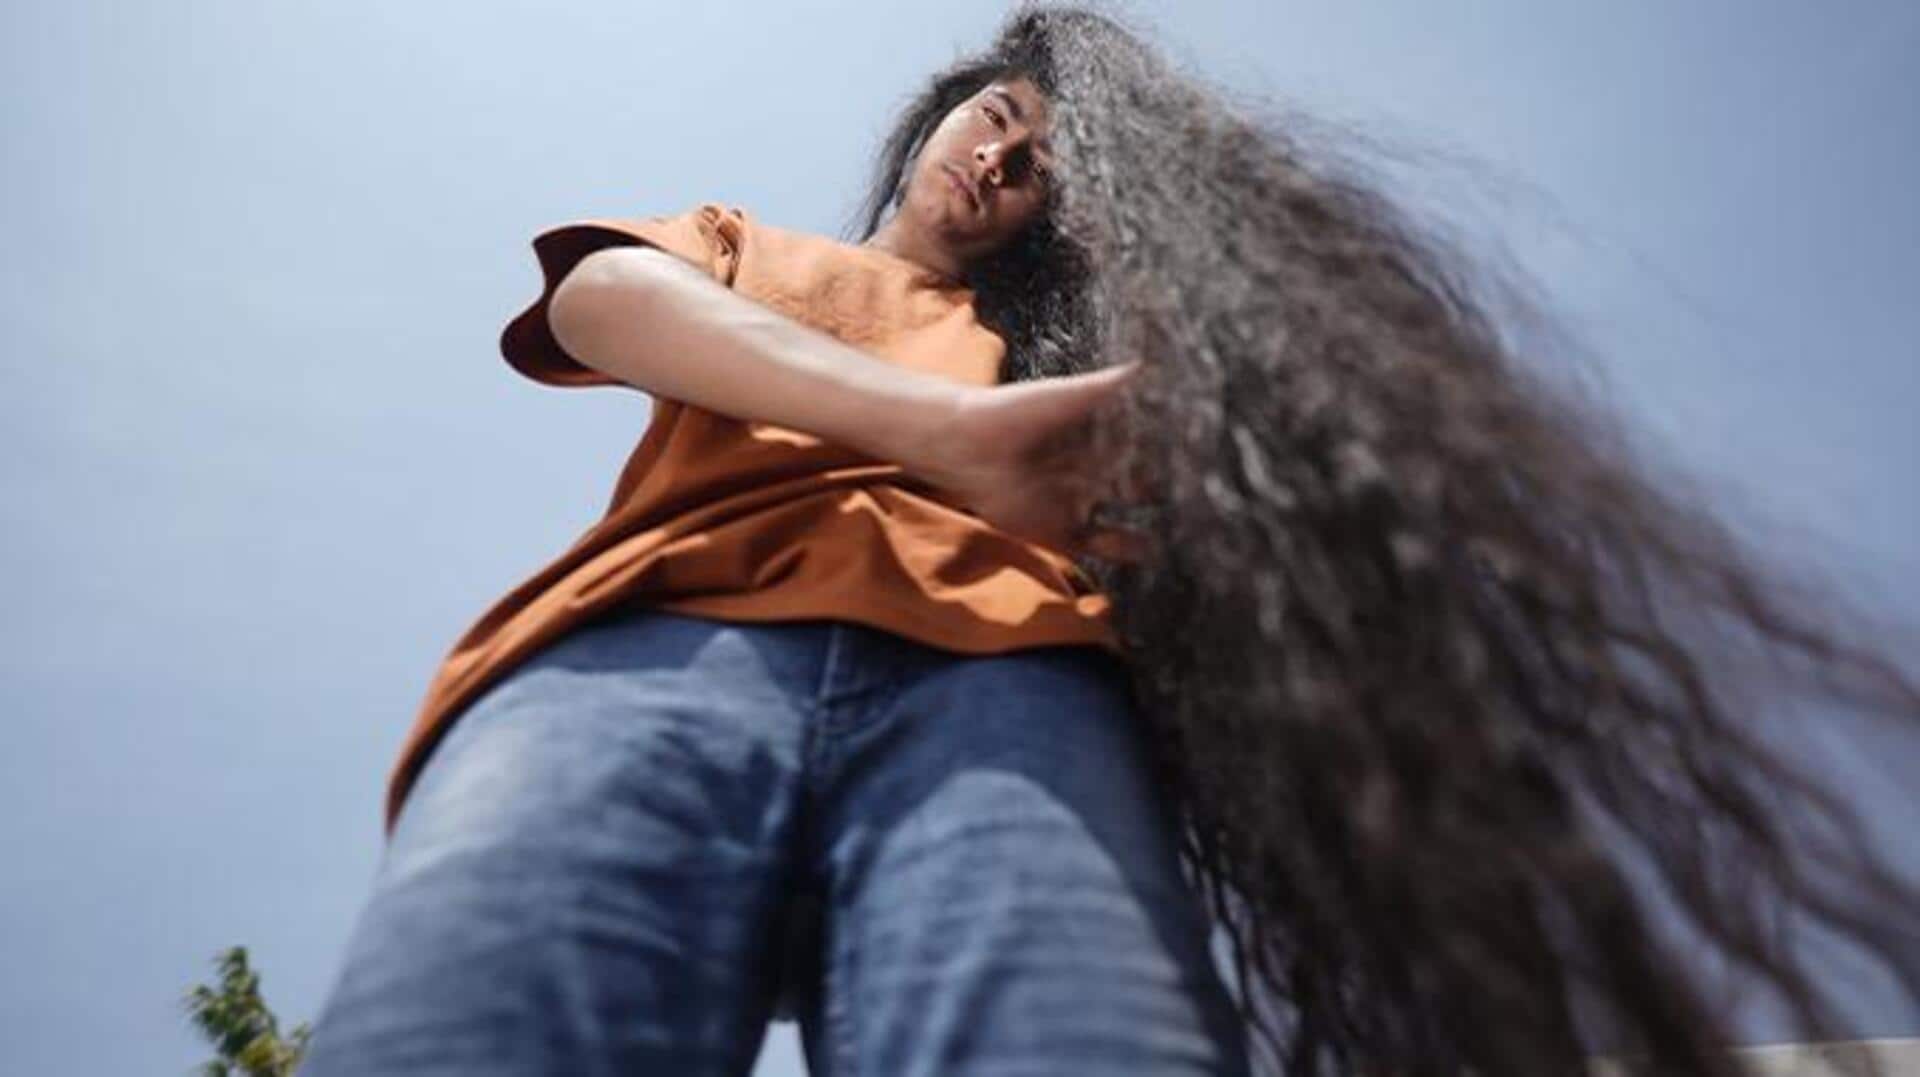 भारत के 15 वर्षीय किशोर ने बनाया लंबे बालों का विश्व रिकॉर्ड, जानिए कितनी है लंबाई